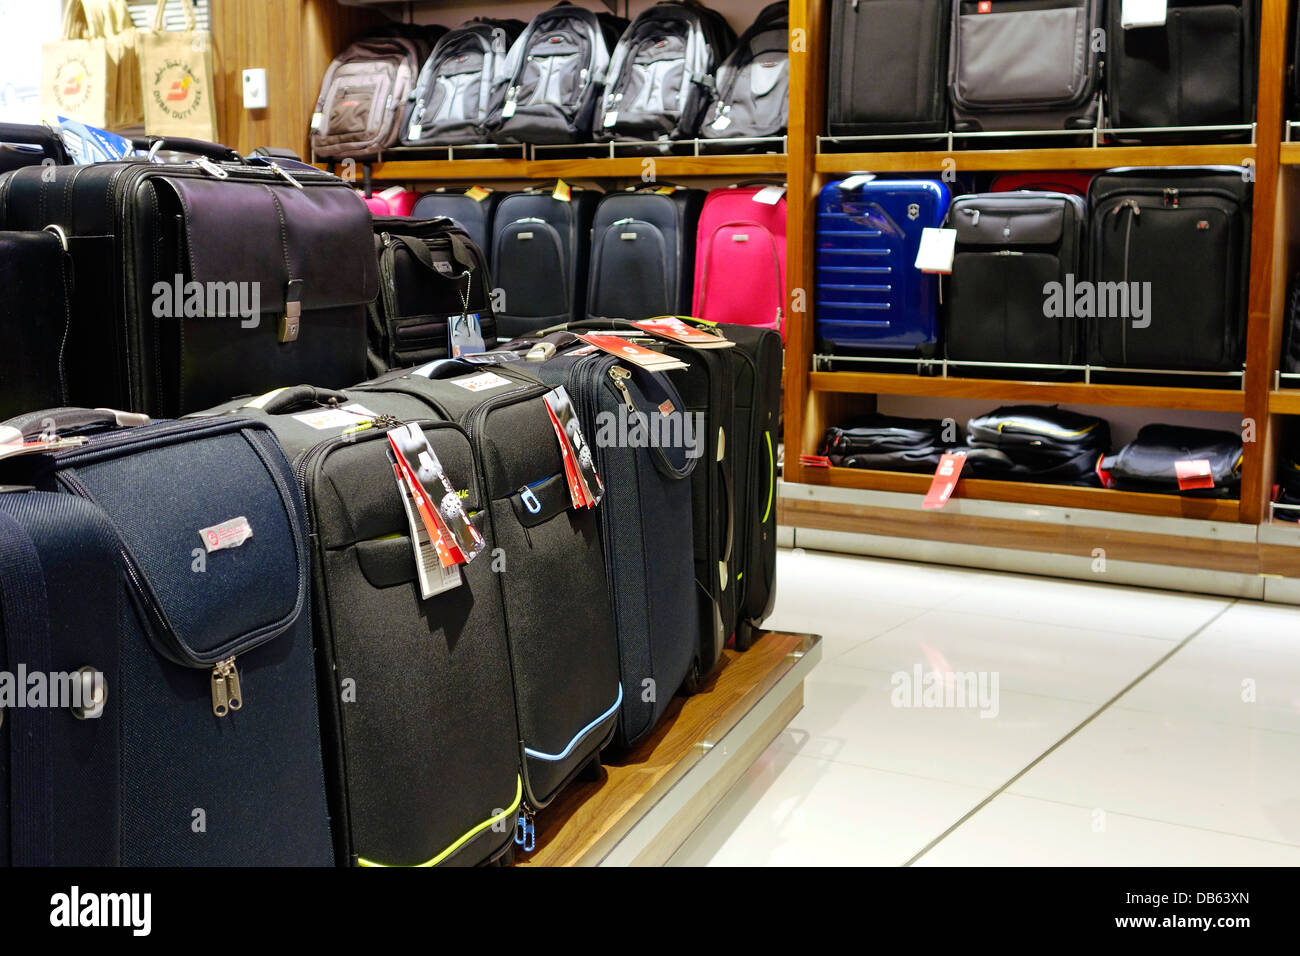 Bagages et sacs Banque de photographies et d'images à haute résolution -  Alamy